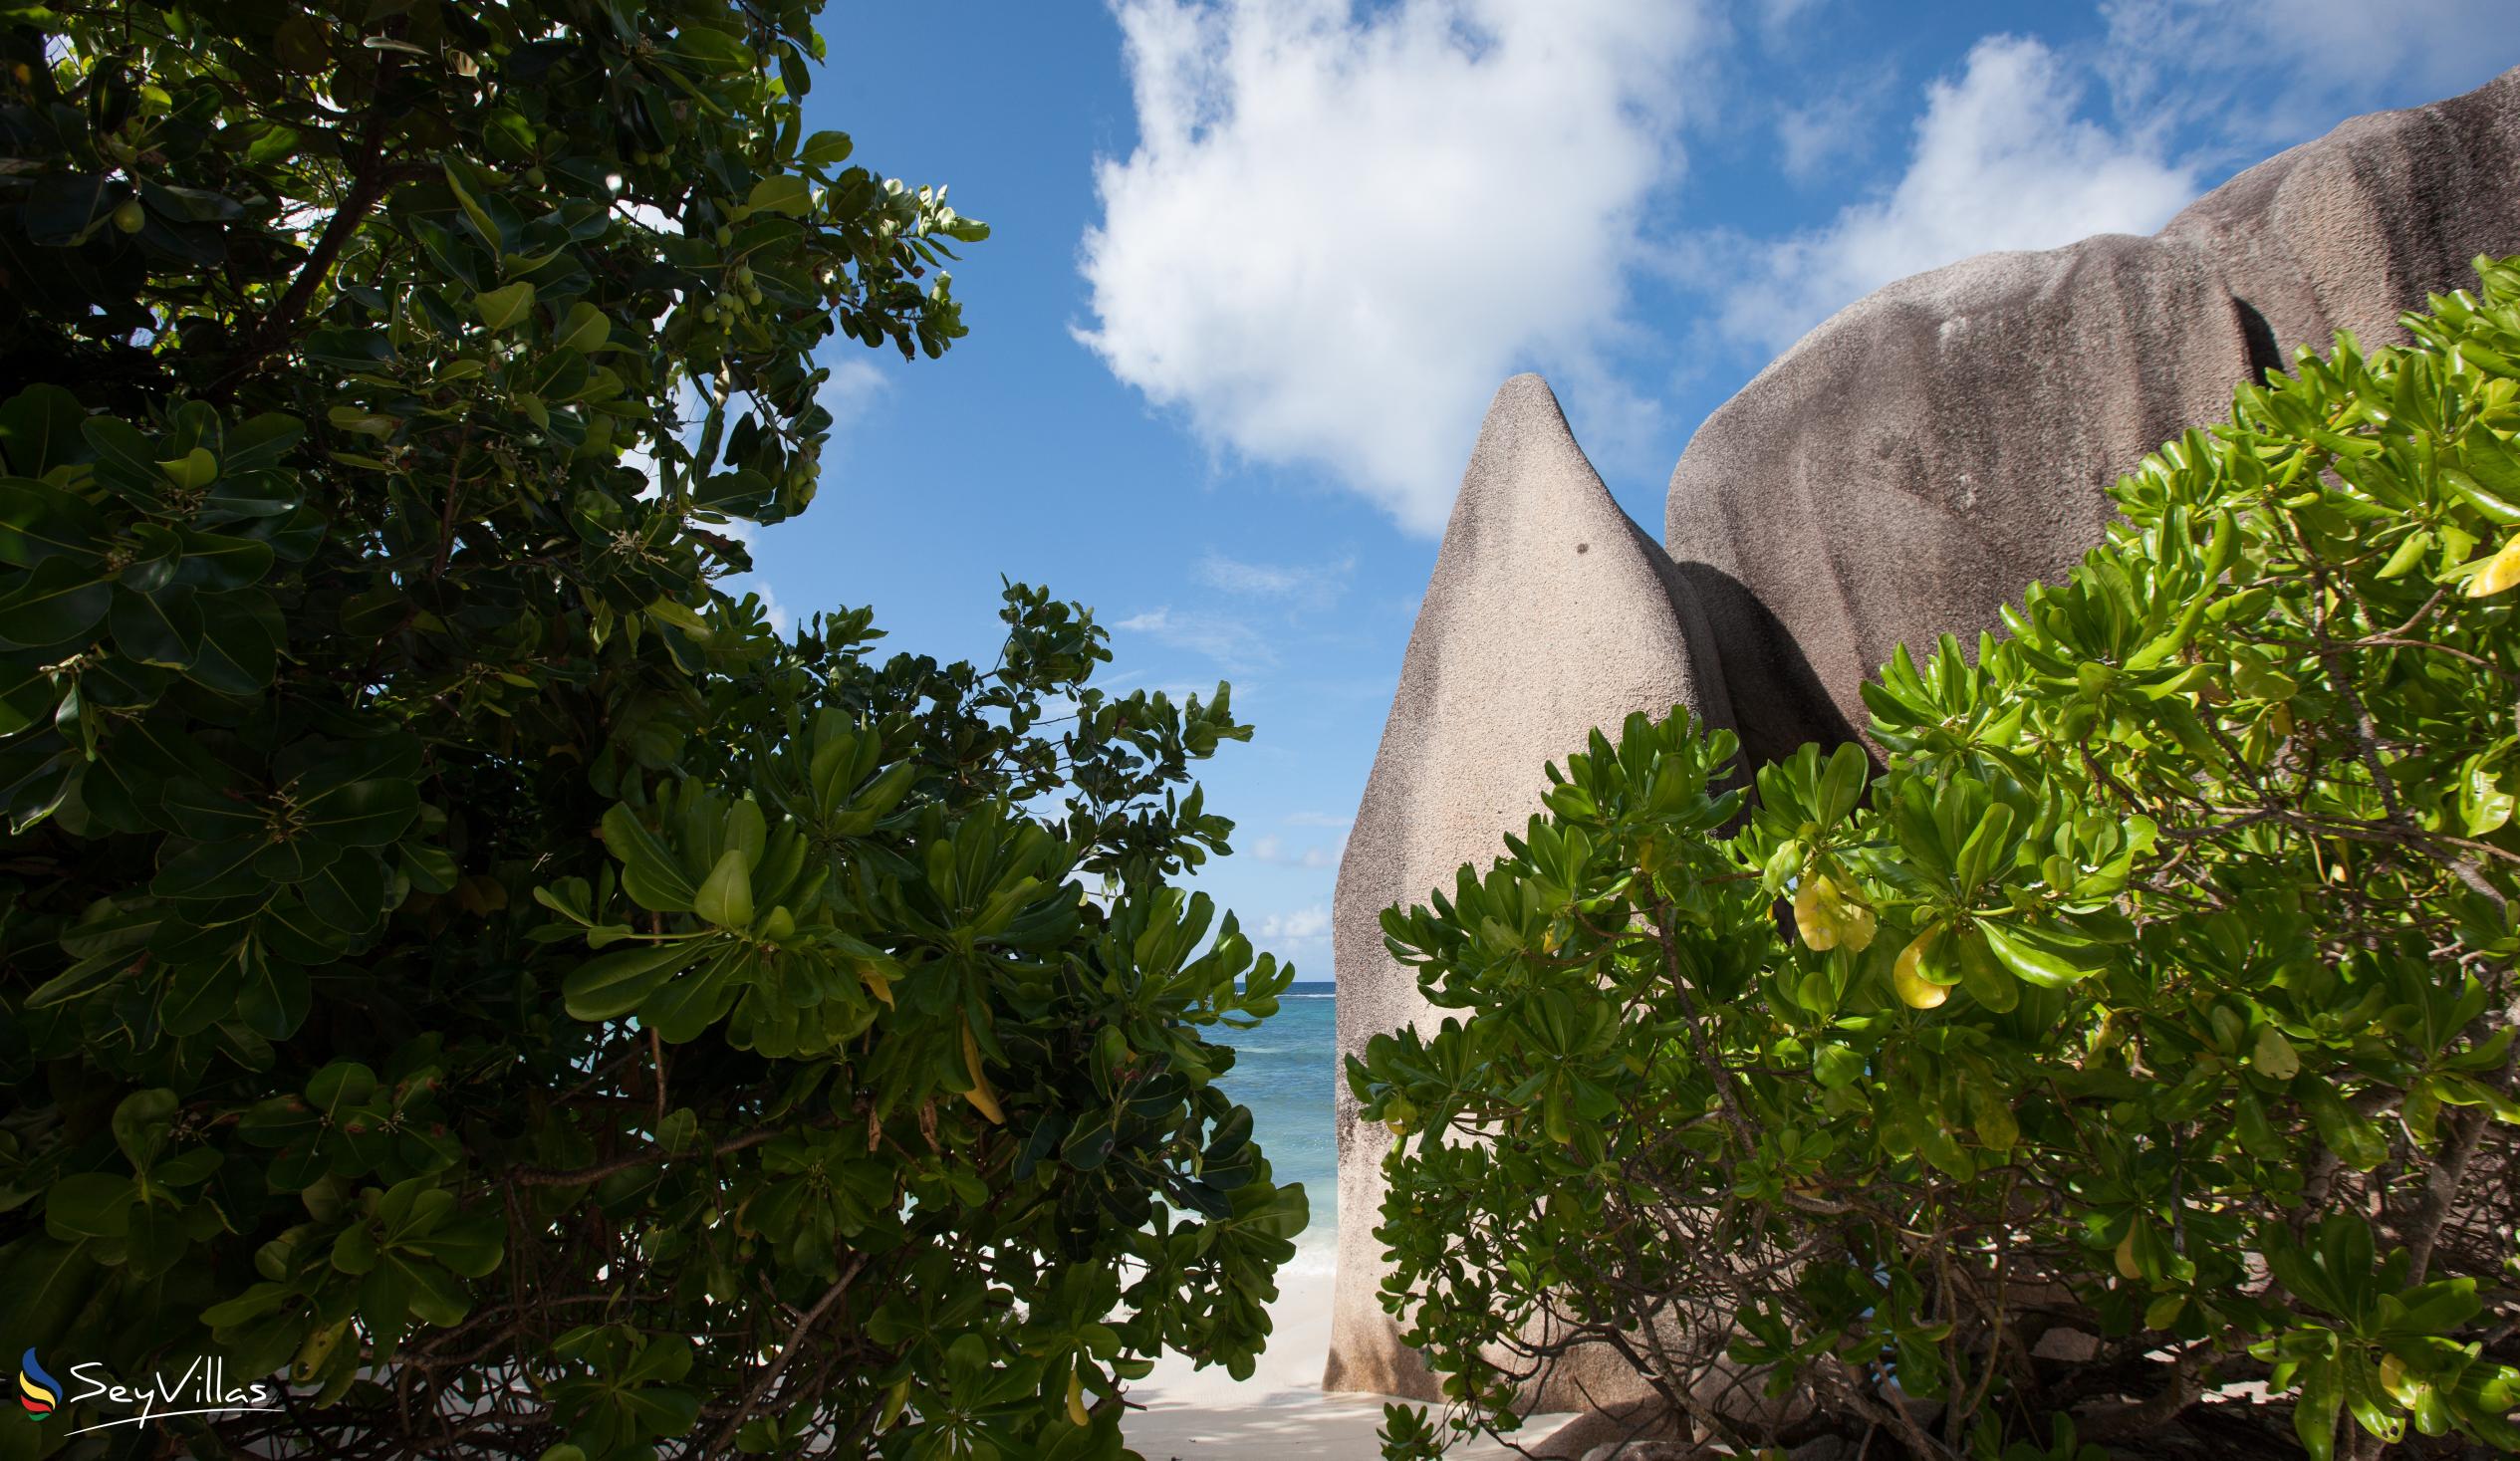 Photo 45: Pension Fidele - Beaches - La Digue (Seychelles)